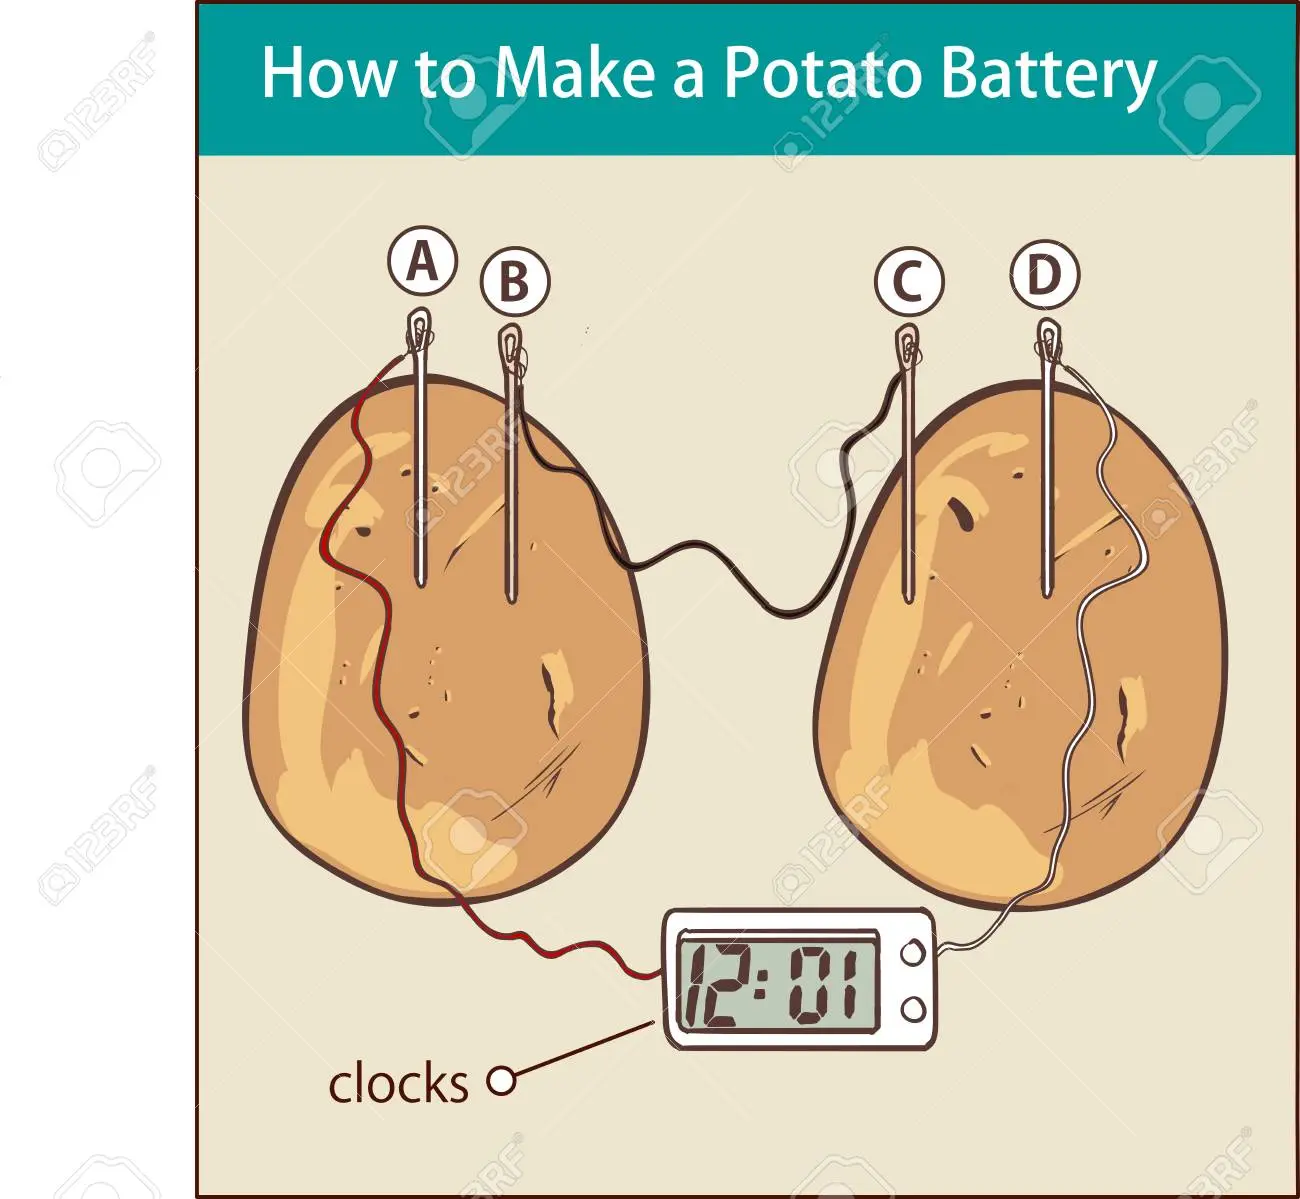 bateria de patata - Cómo se carga un celular con una papa